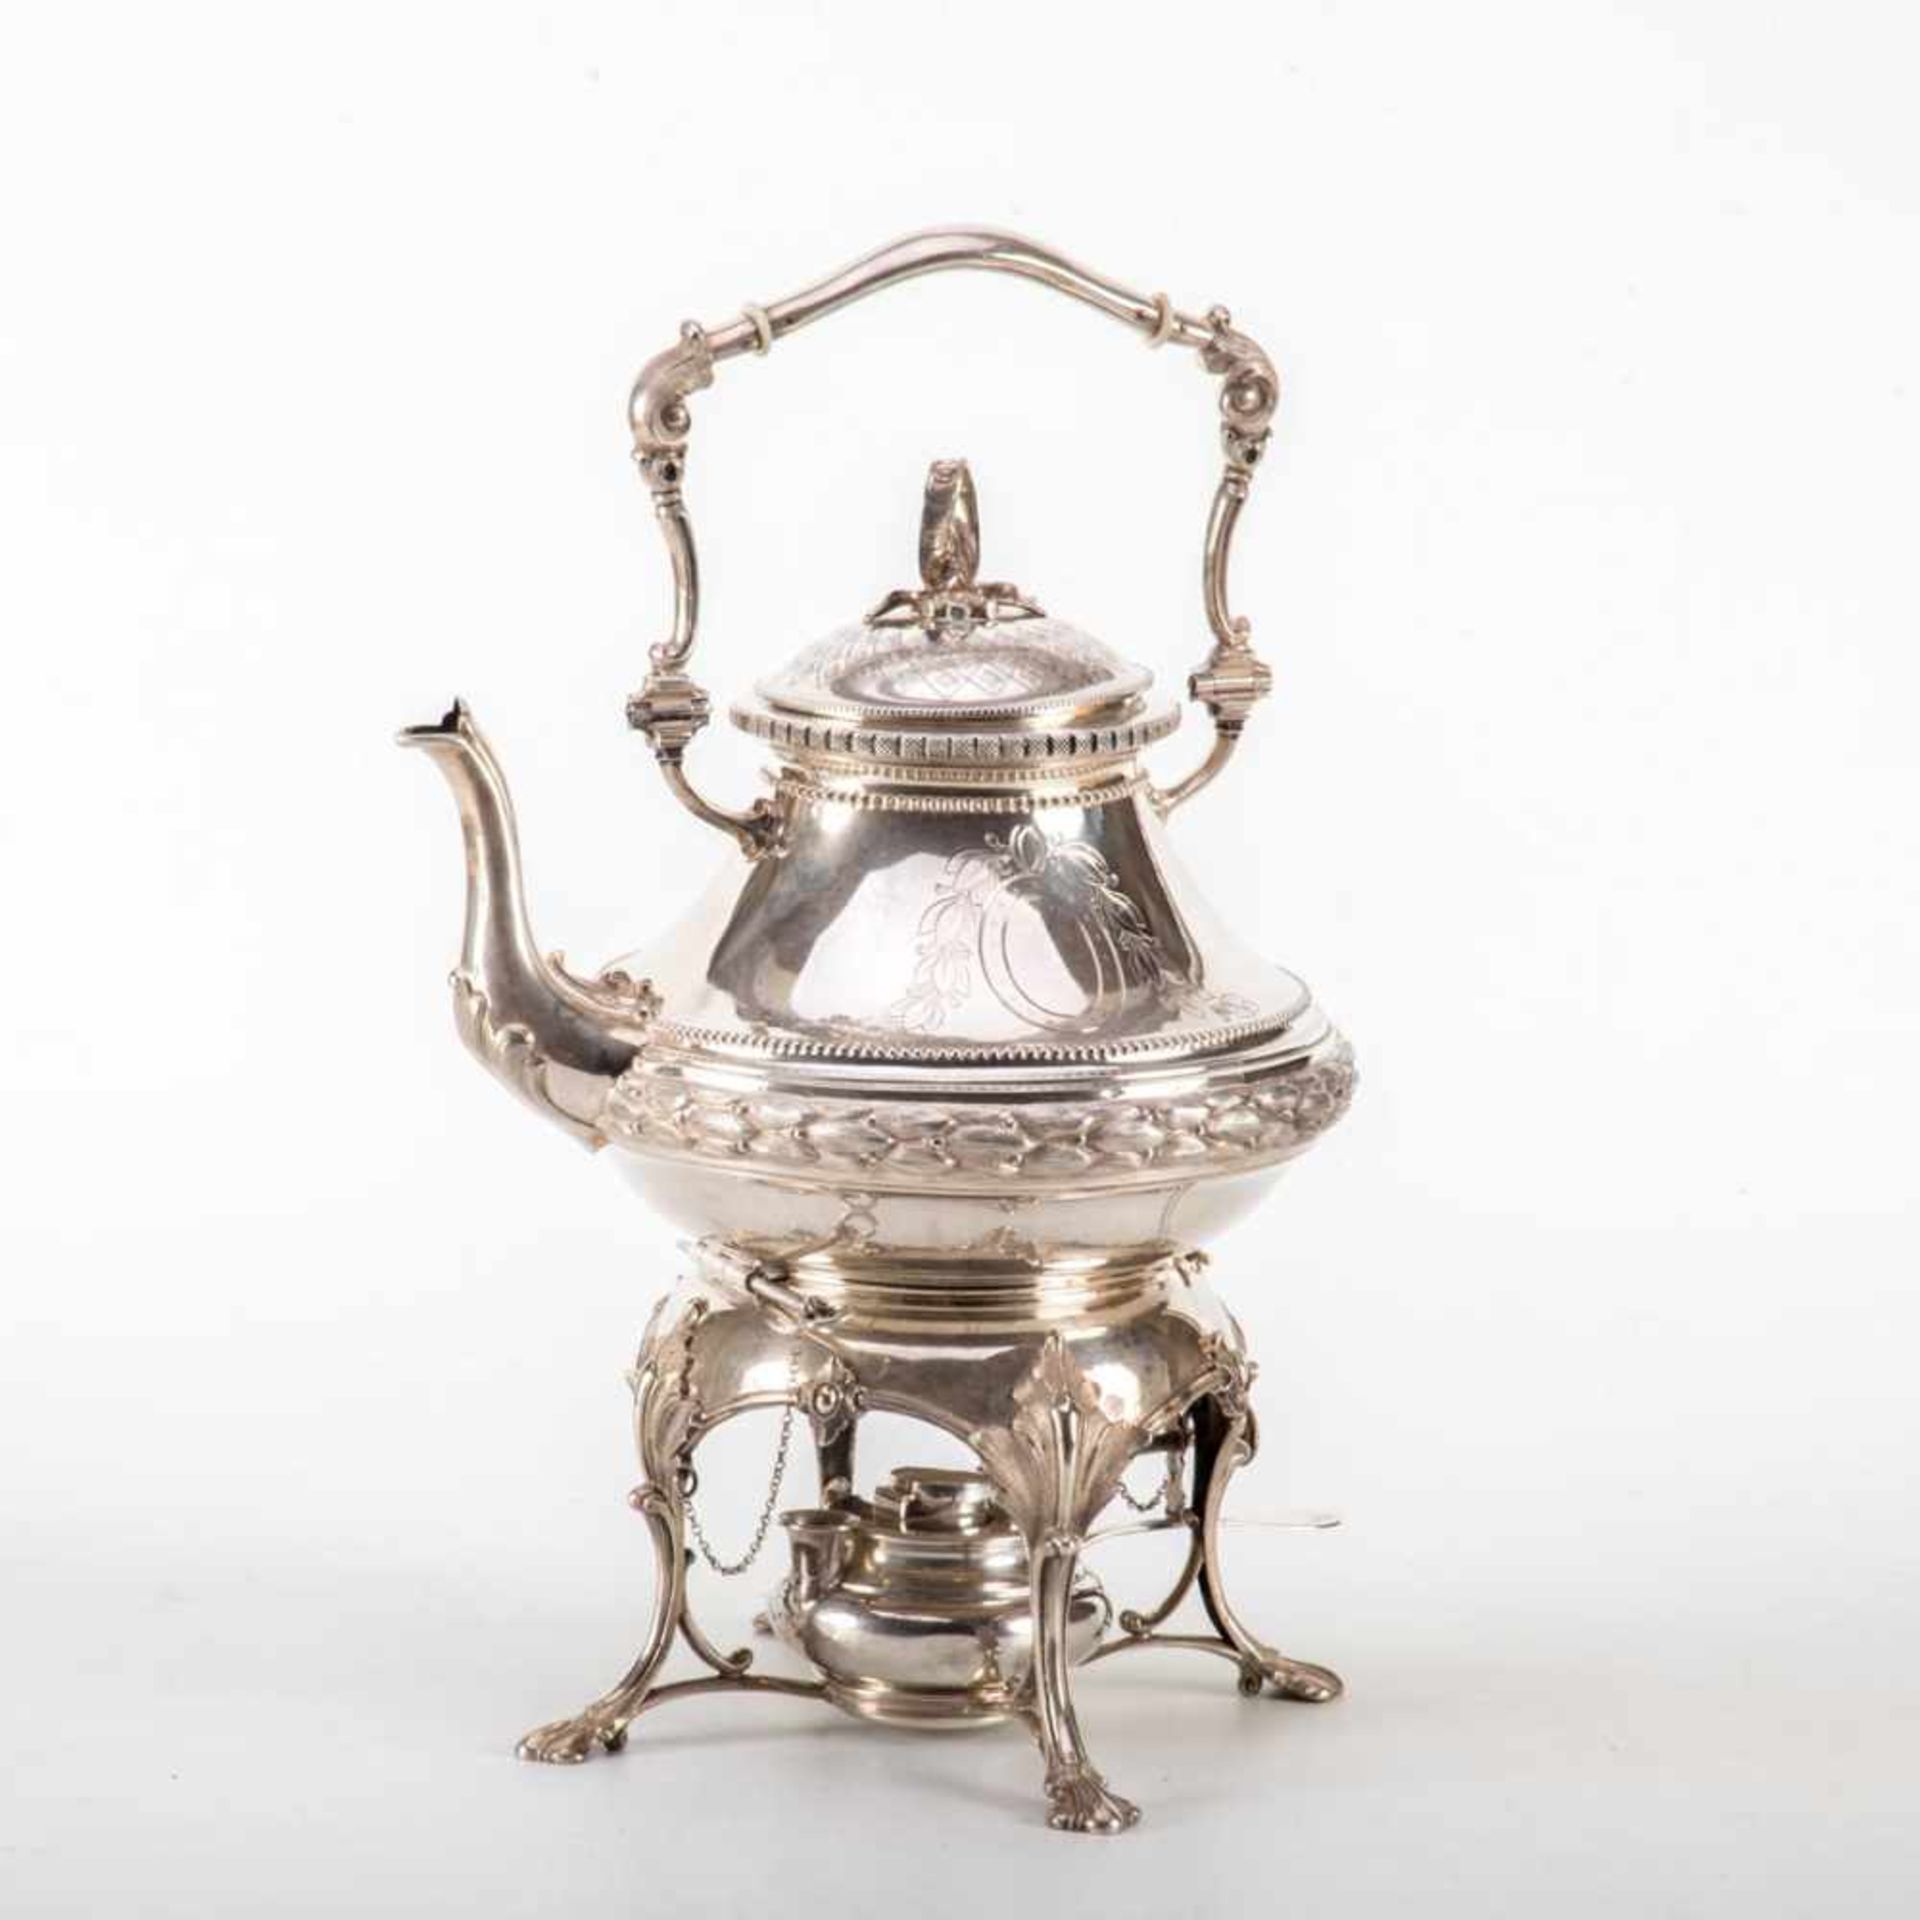 Teekanne mit Rechaud800er Silber, gedrückt bauchiger Korpus, umlaufend dekorativ gegliedert. Von